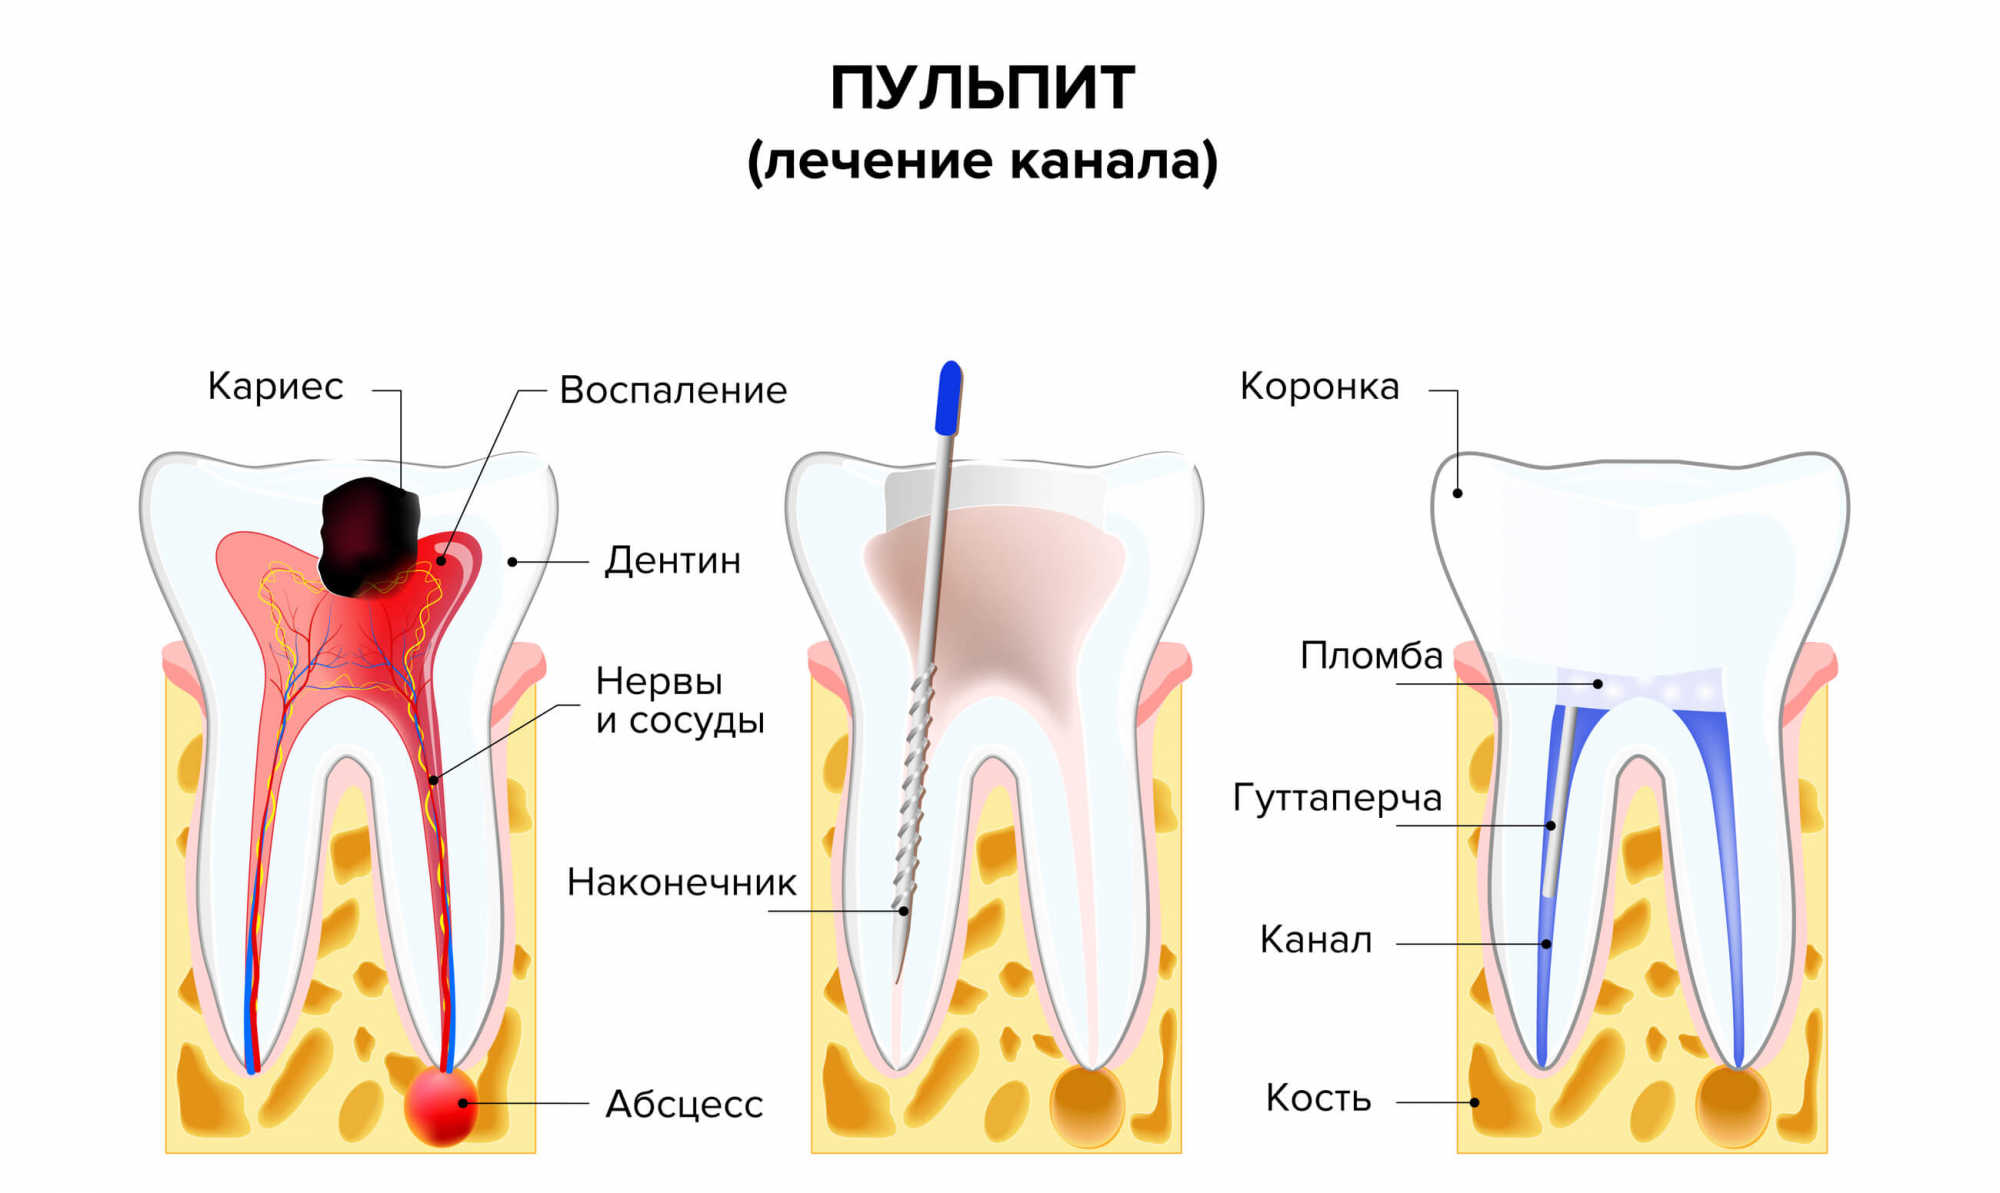 Боль в зубе после пломбирования каналов